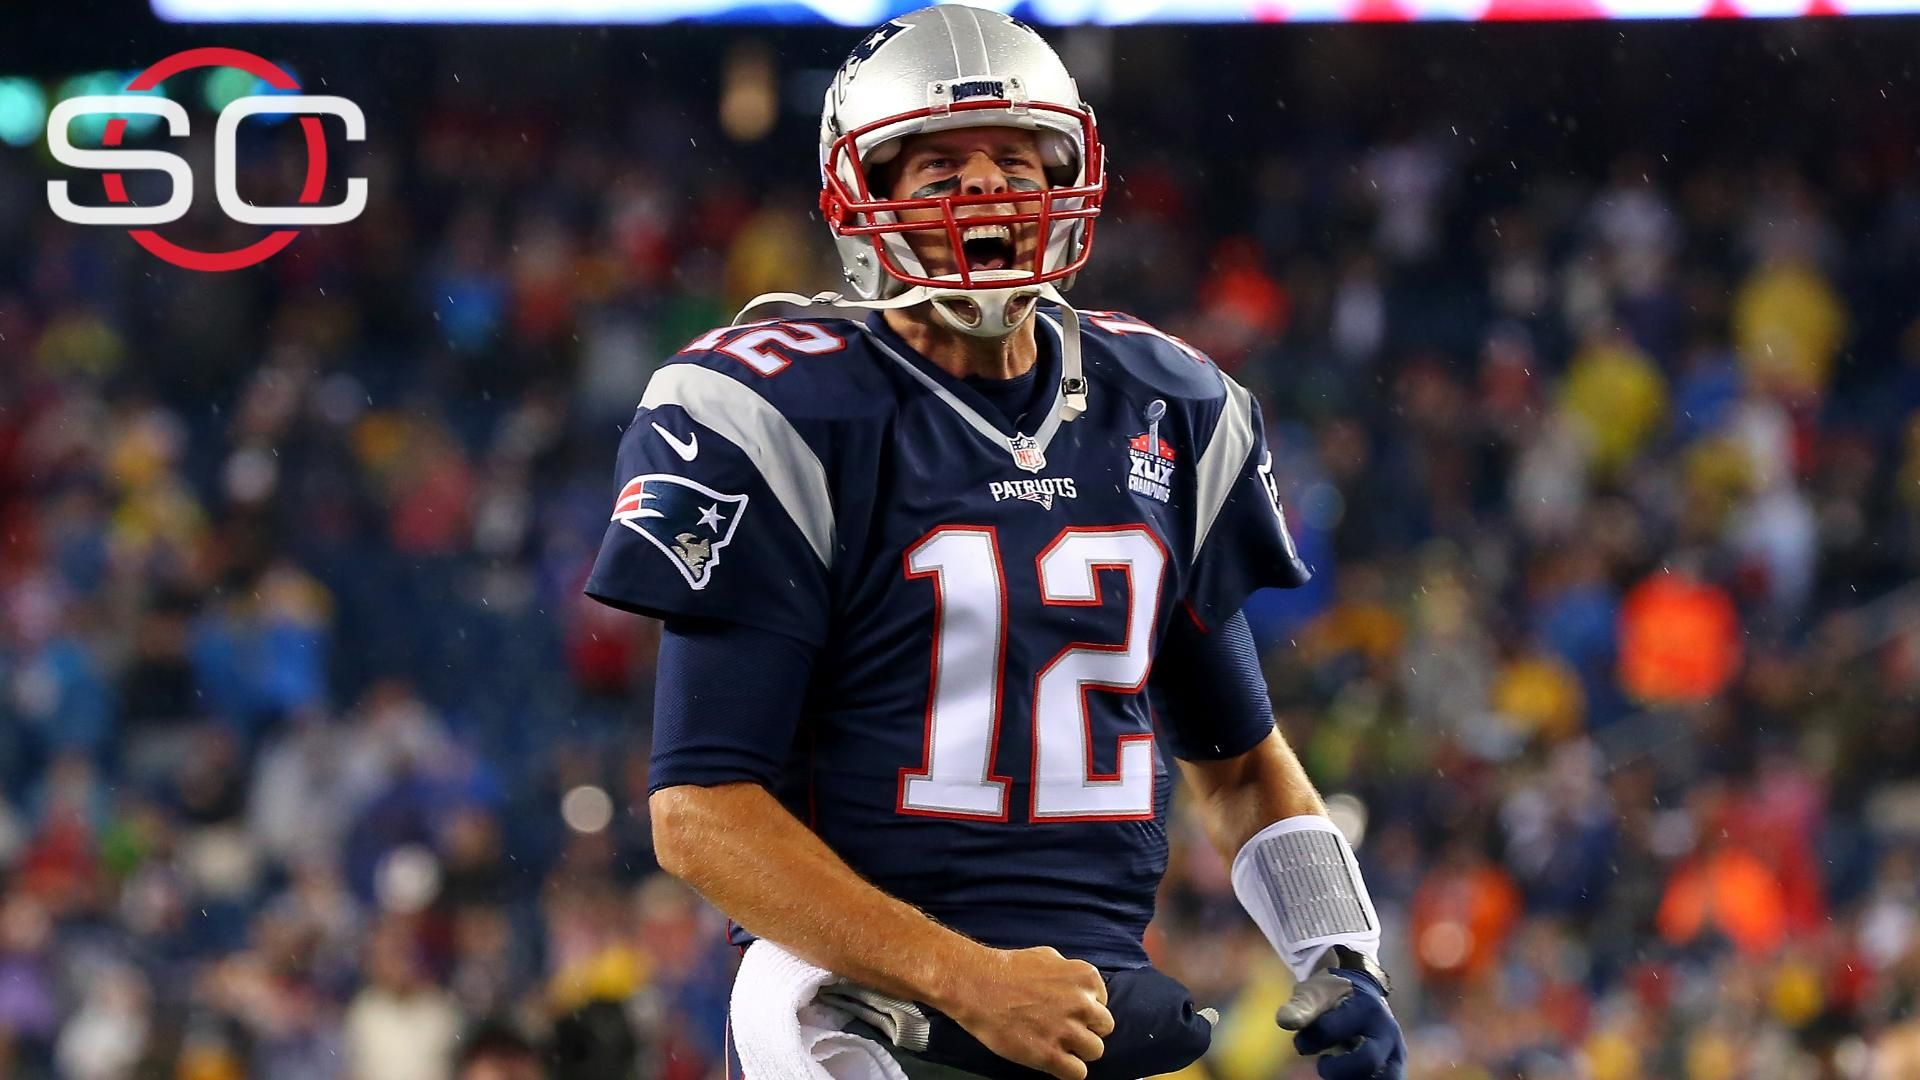 Nike Tom Brady NFL Fan Jerseys for sale